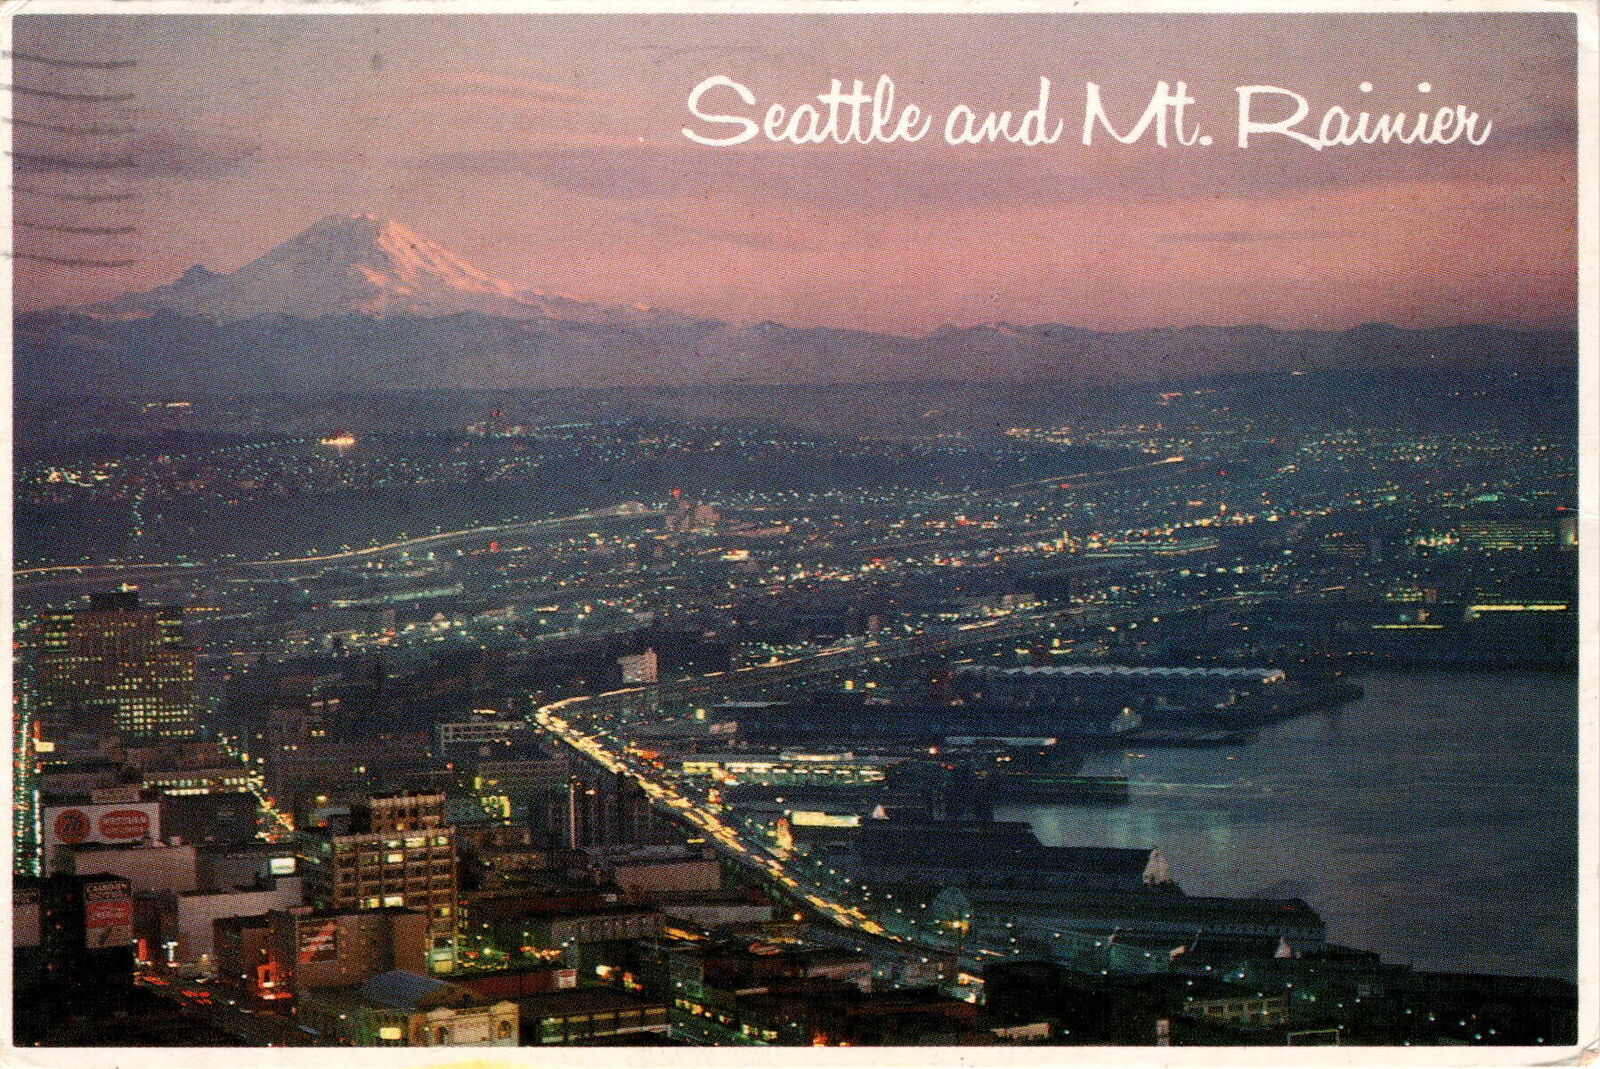 Seattle & Mt. Rainier: A Majestic Vintage Postcard